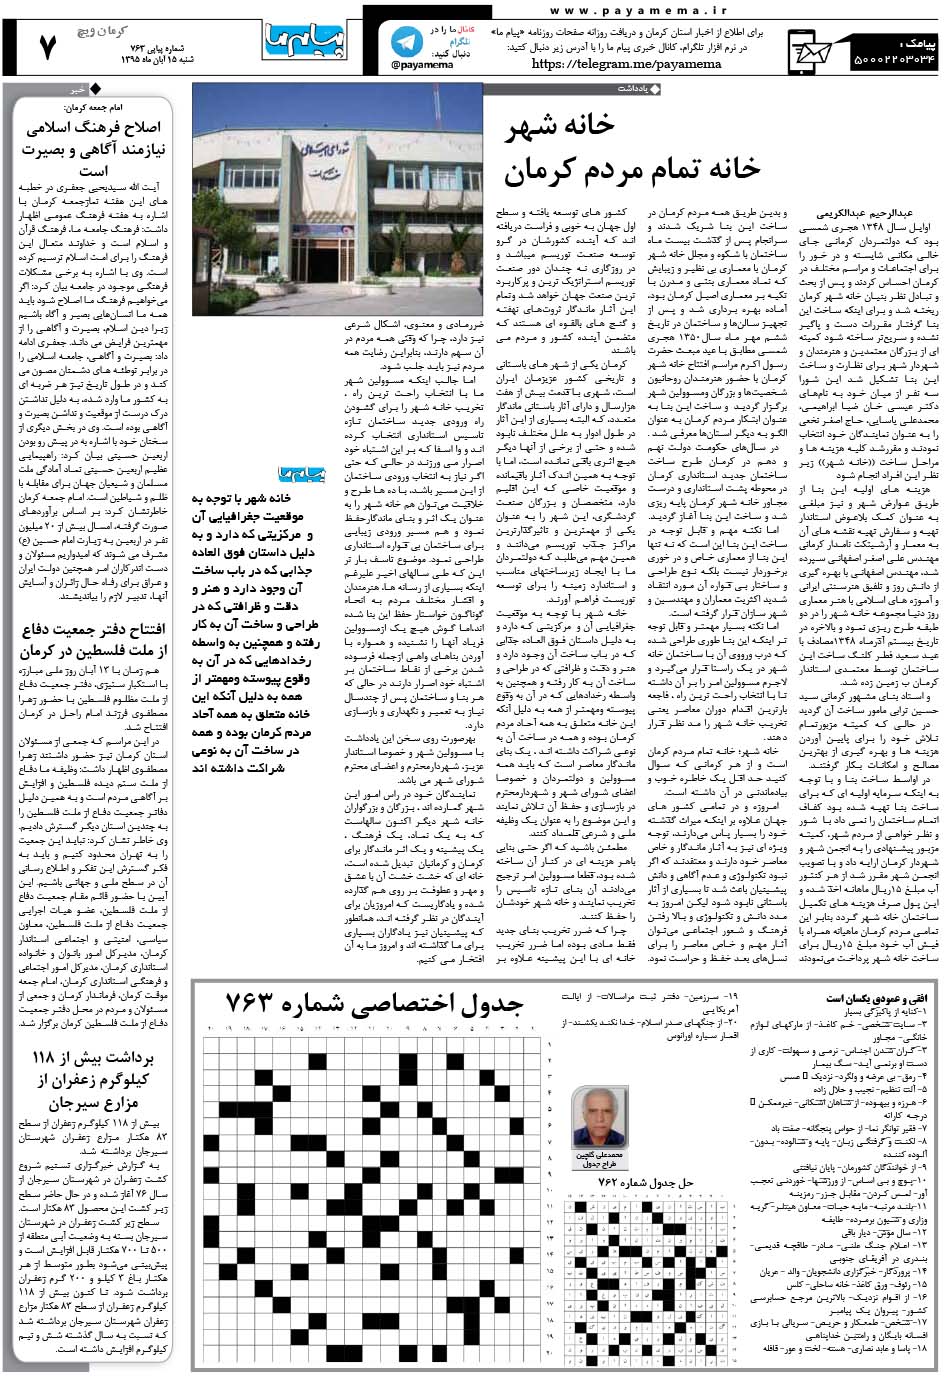 صفحه کرمان ویچ شماره 763 روزنامه پیام ما